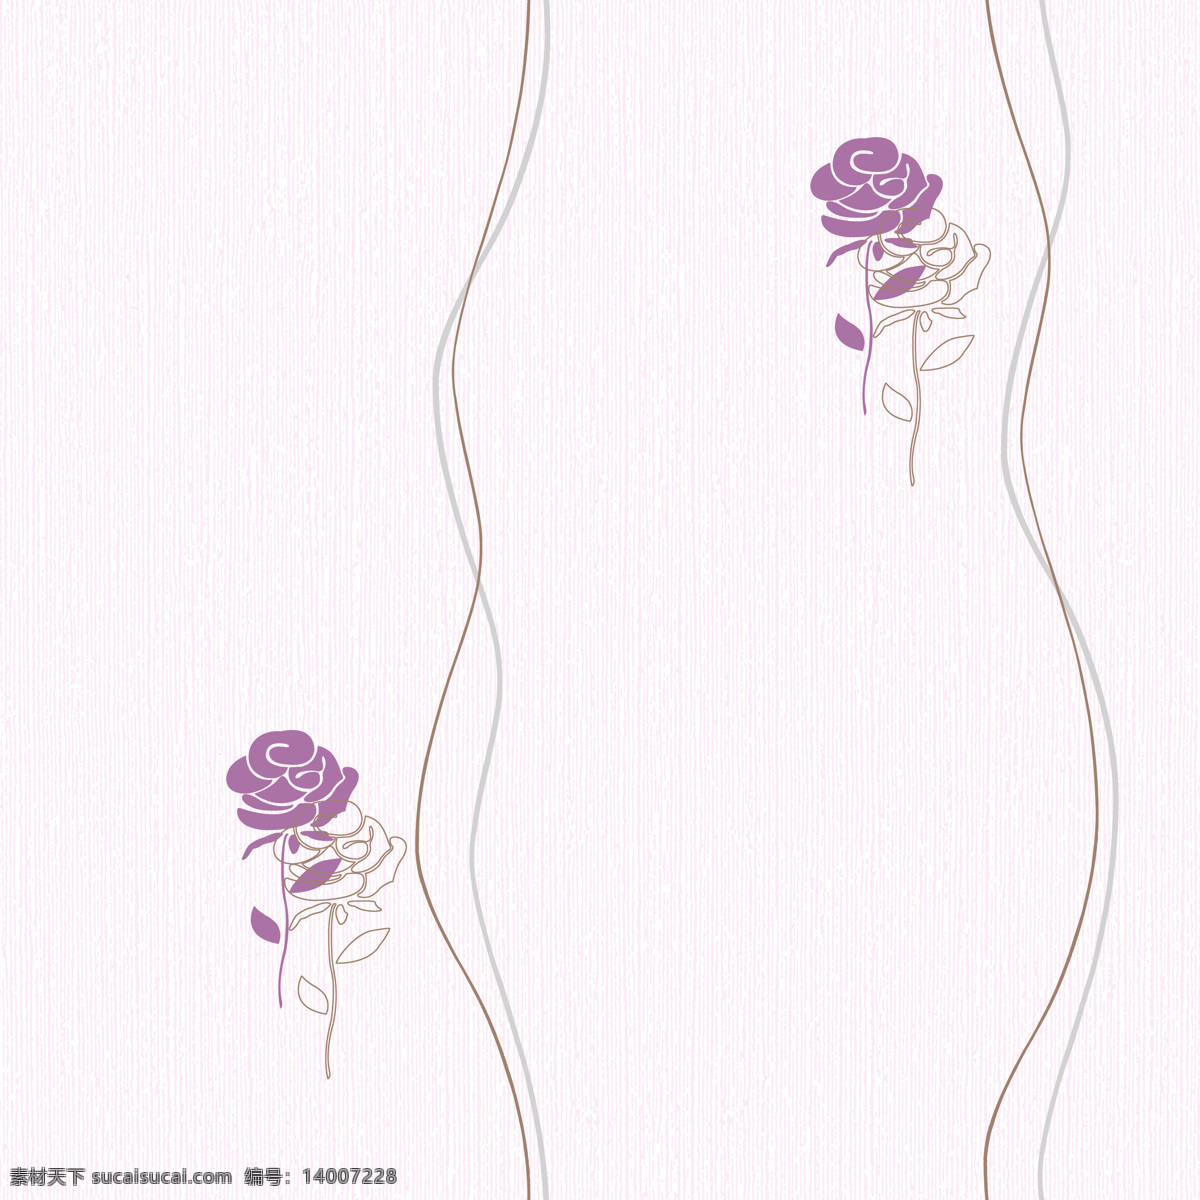 紫色 玫瑰花 田园 风格 壁纸图片 壁纸 背景图片